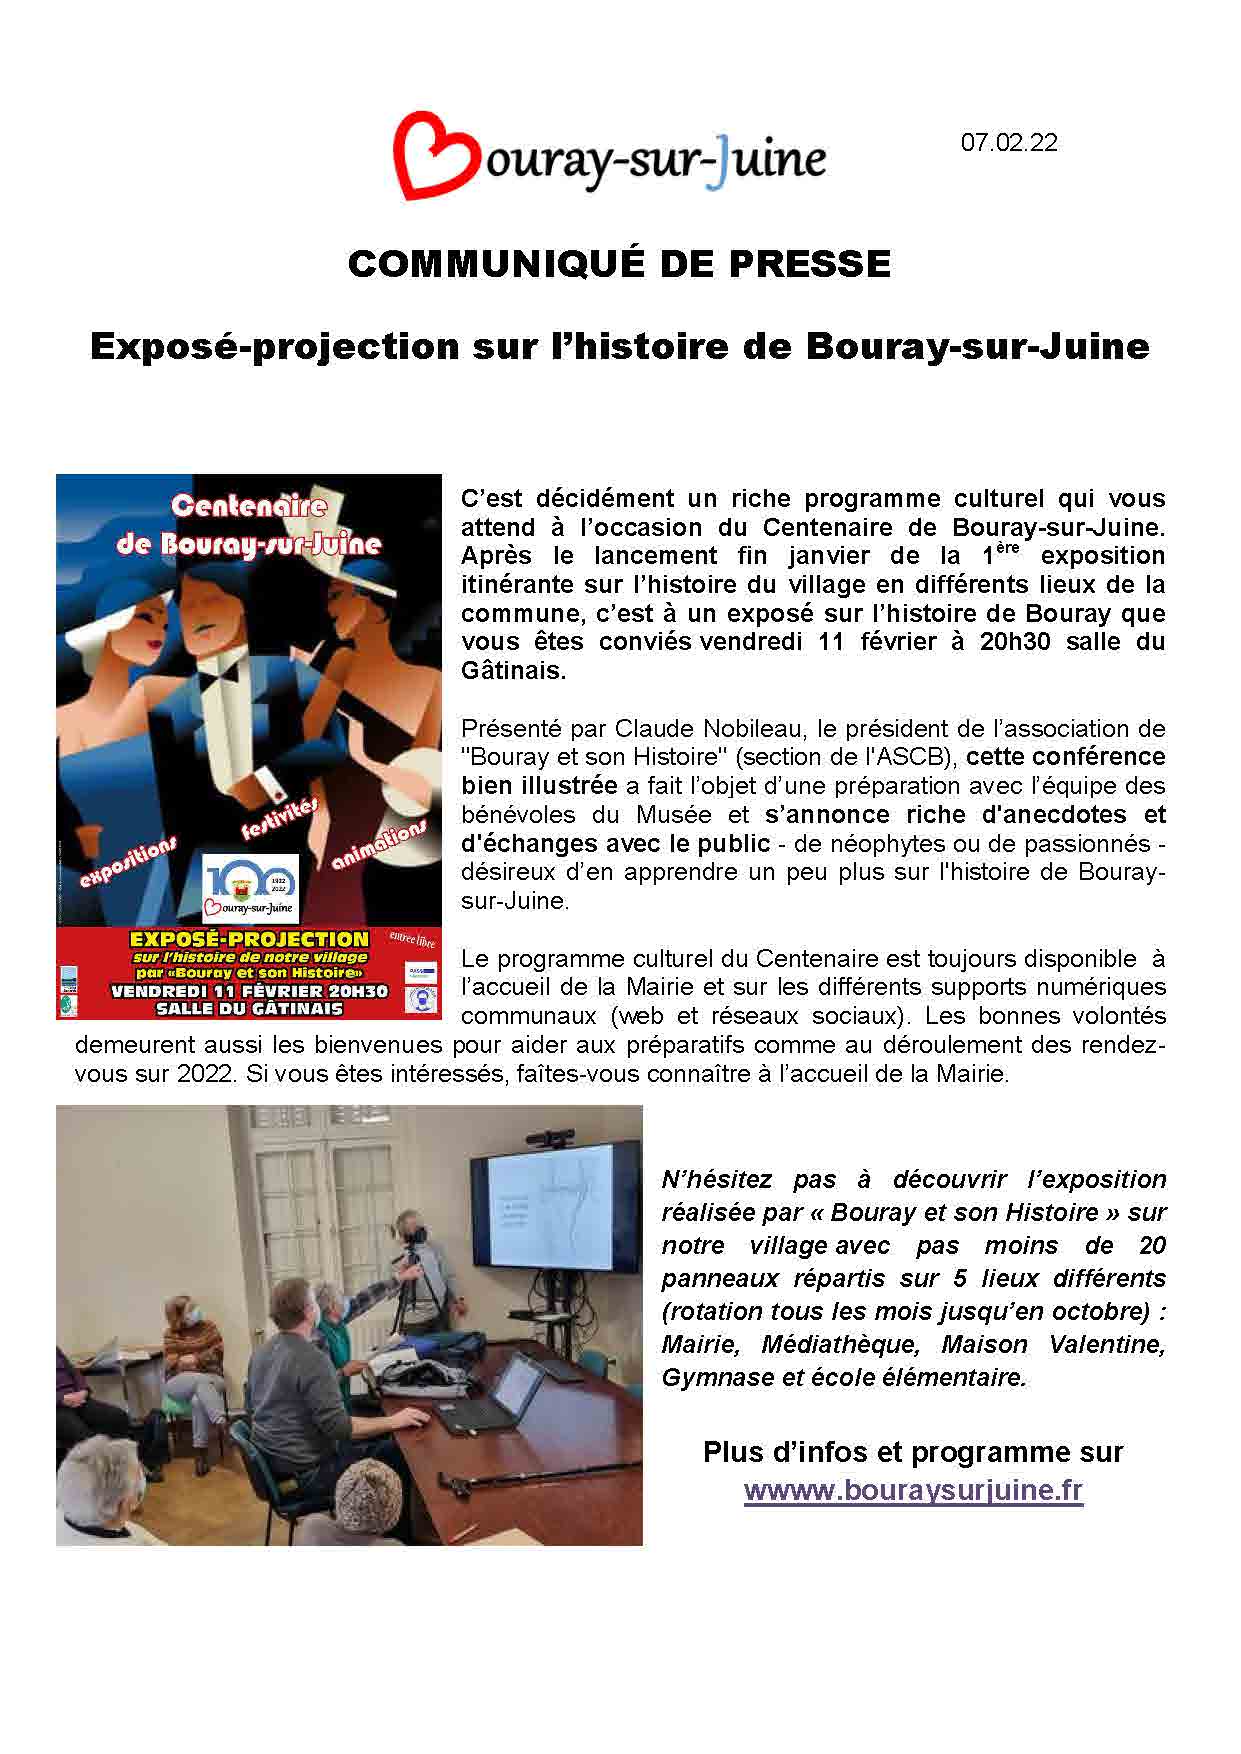 2022.02.07 communiqué de presse exposé projection sur histoire de Bouray sur Juine